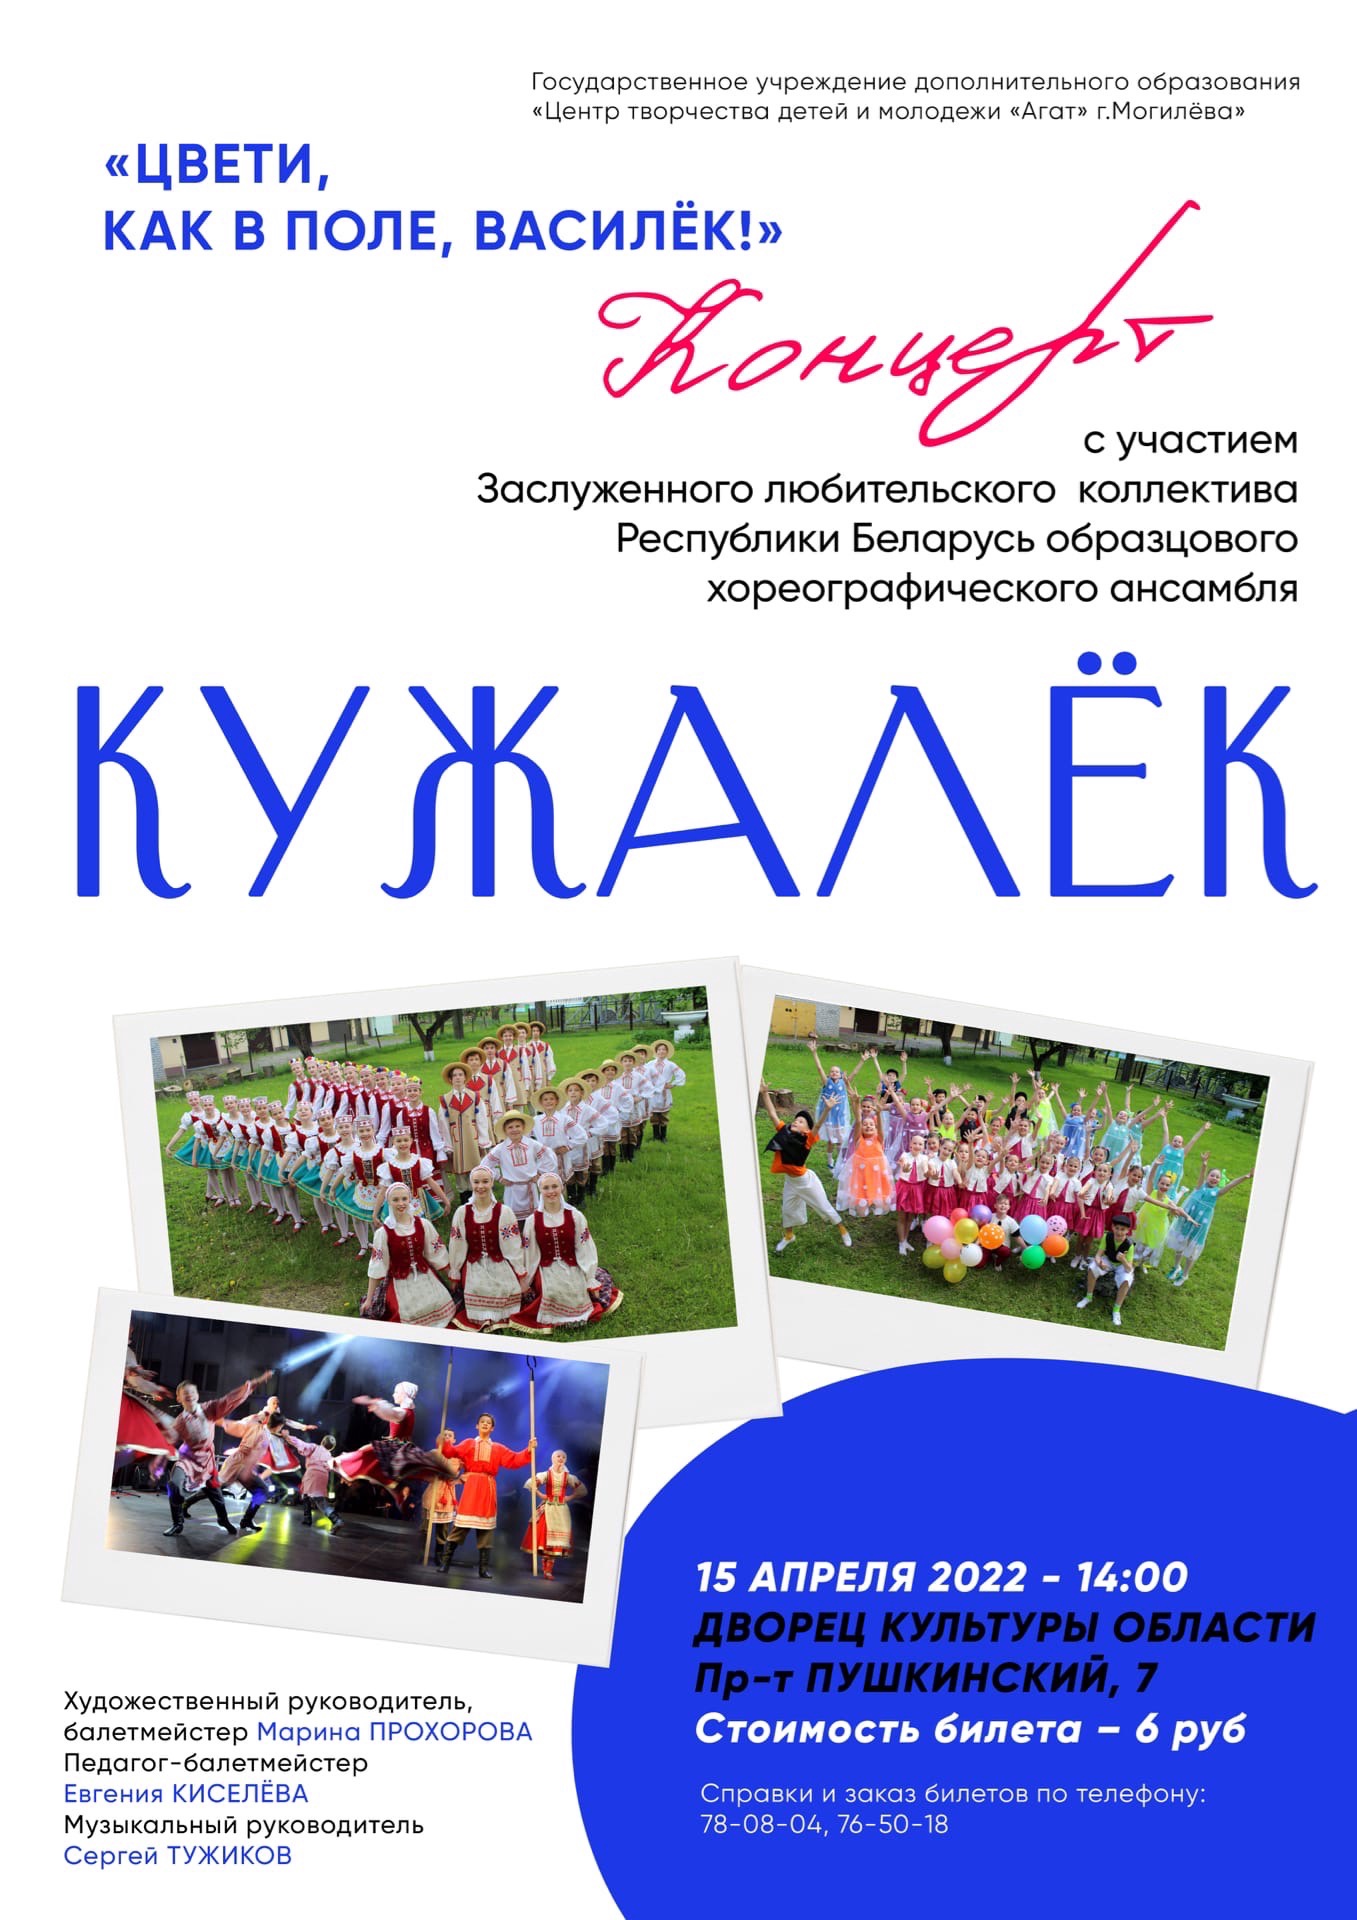 Образцовый хореографический ансамбль «Кужалек» выступит в ДК области 15 апреля